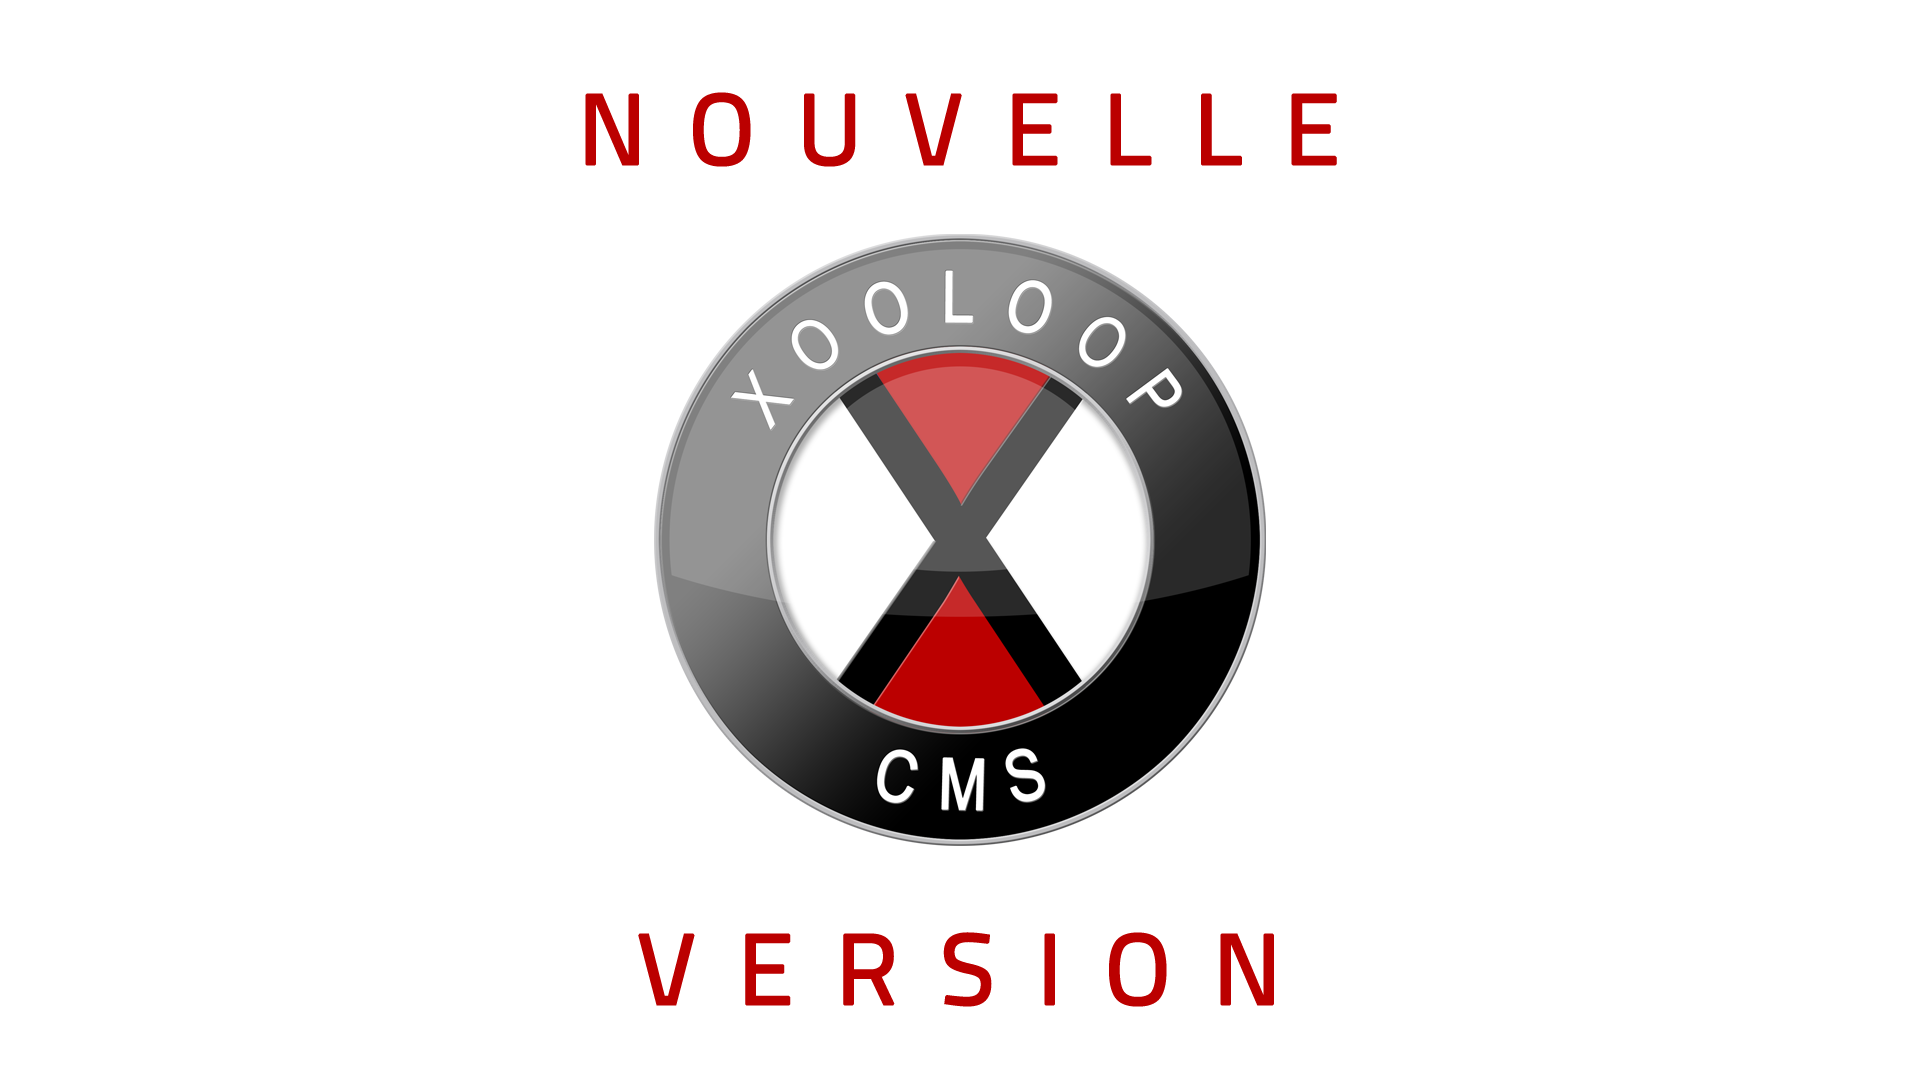 Nouvelle version de Xooloop CMS (v3.7.2)